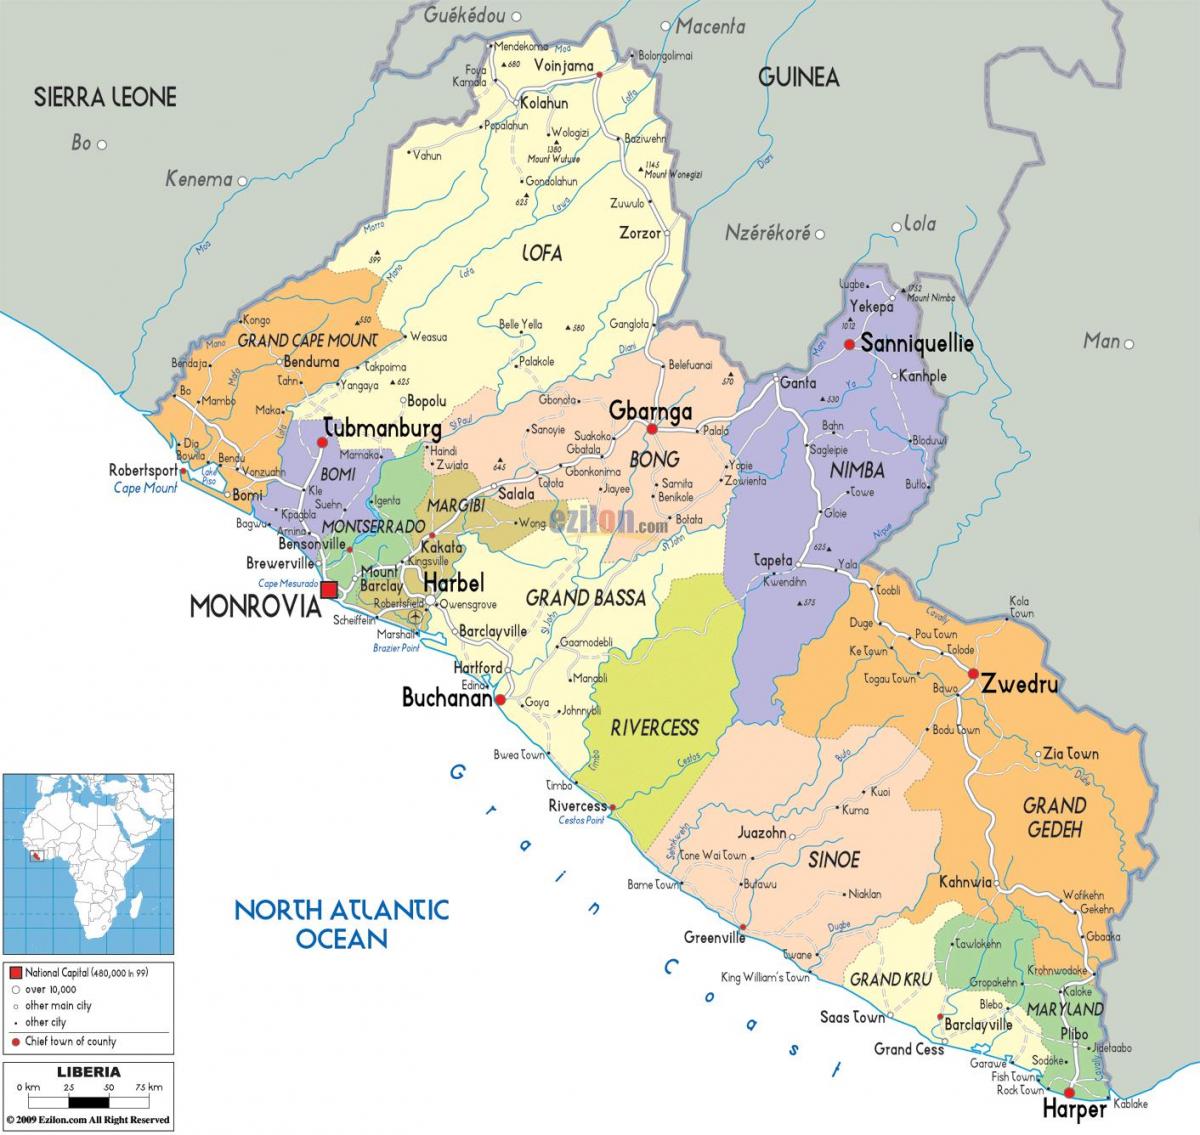 në hartë politike të Liberi